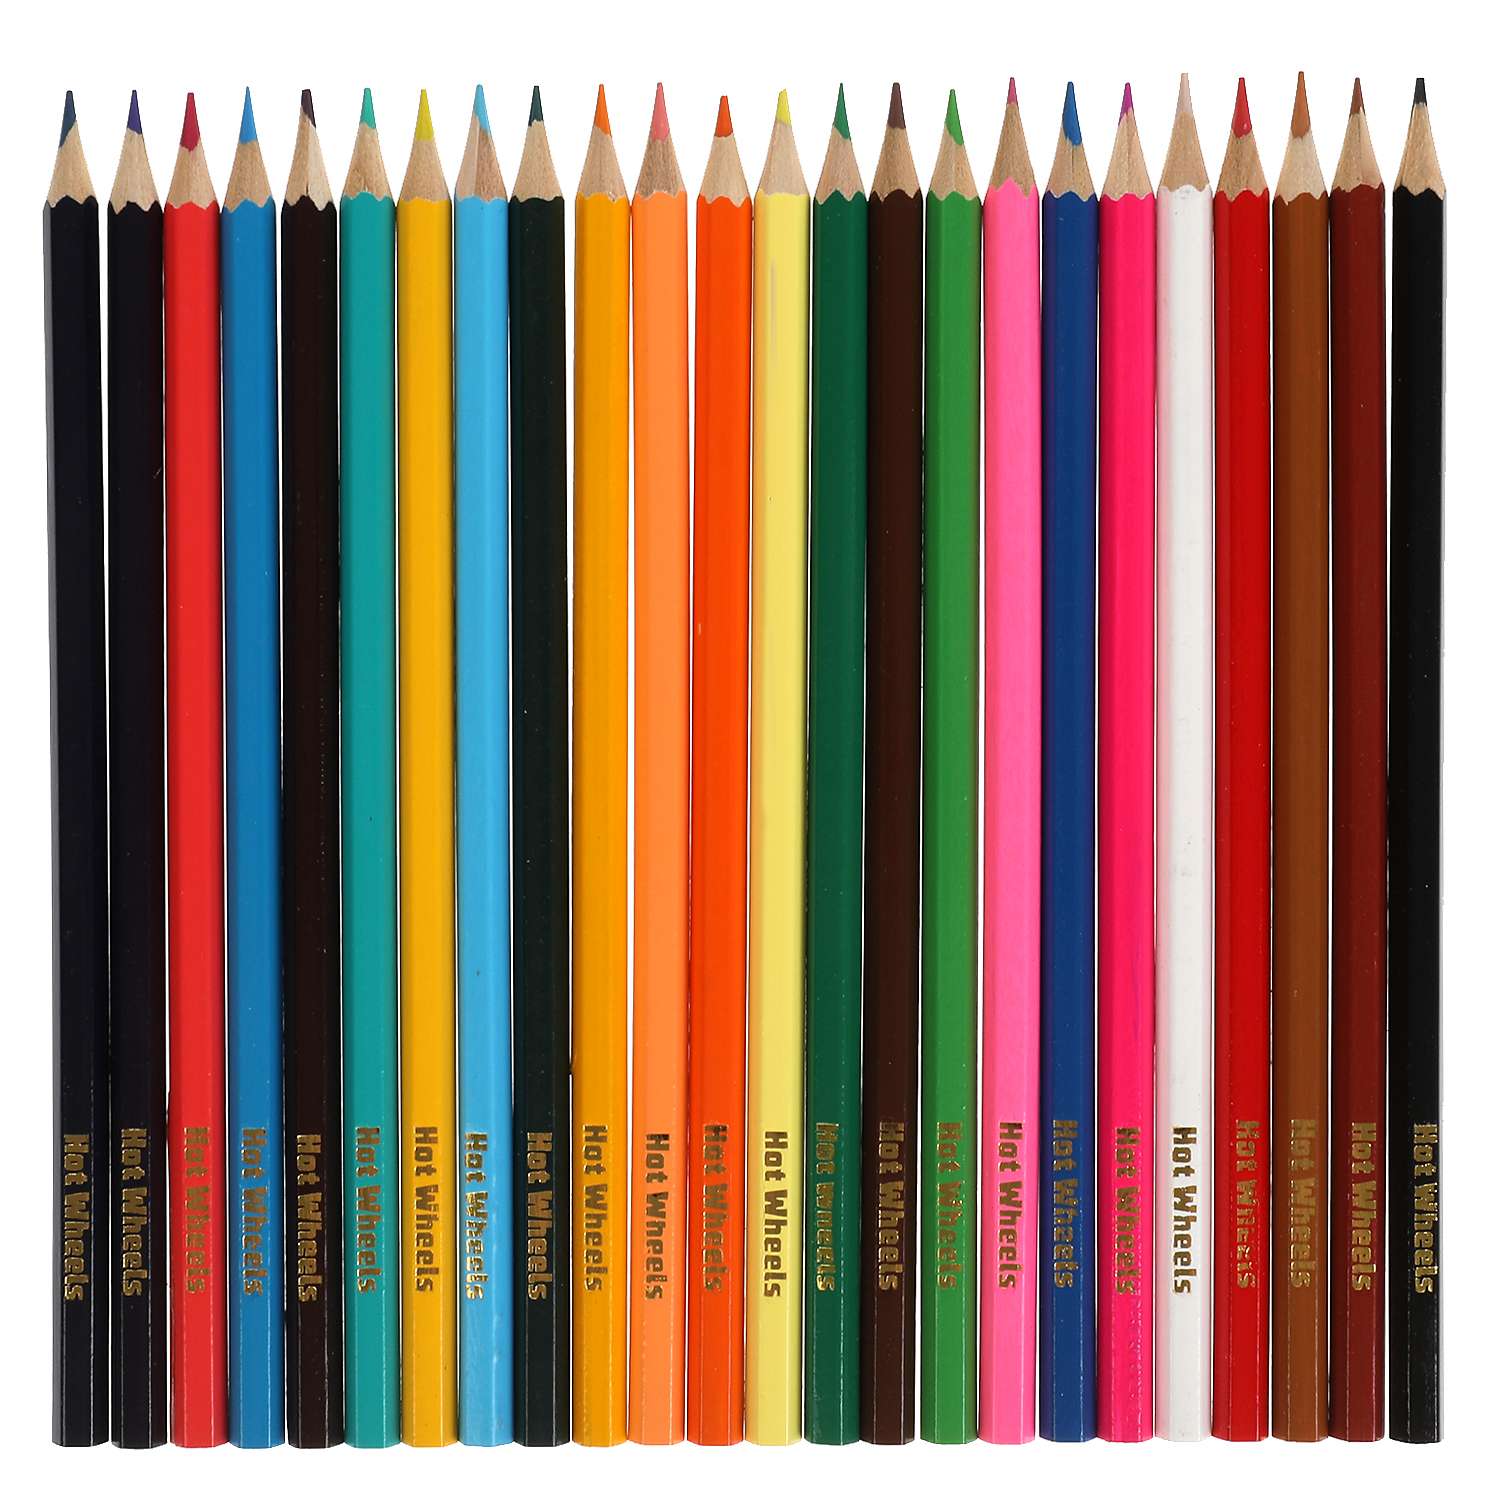 Цветные карандаши Умка Hot Wheels 24 цвета шестигранные 313754 - фото 2